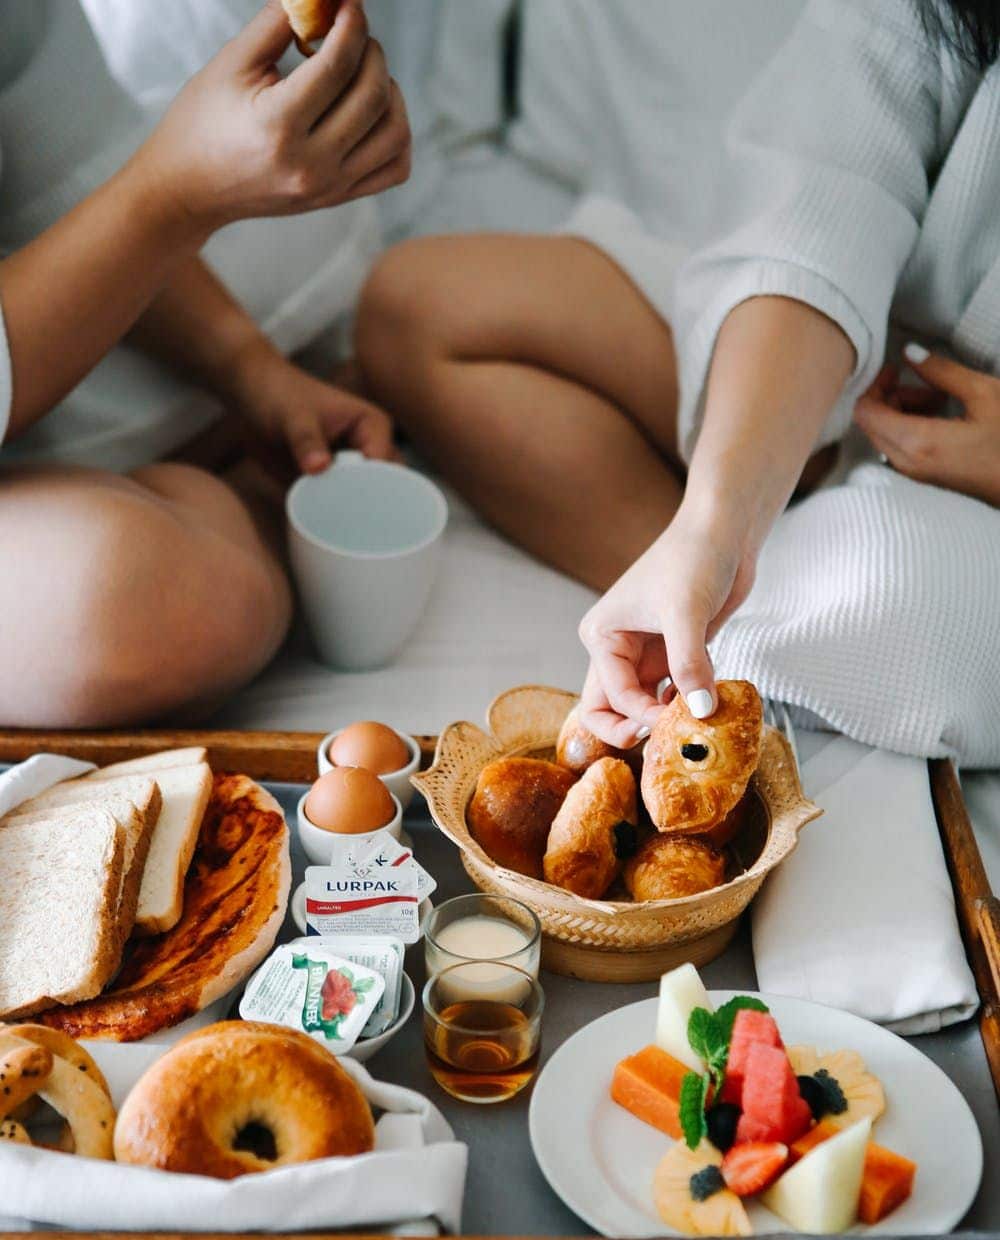 ארוחת בוקר שמגיעה עד למיטה נחשבת בעיני רבים לפינוק המושלם ביותר במהלך בוקר רגוע בבית